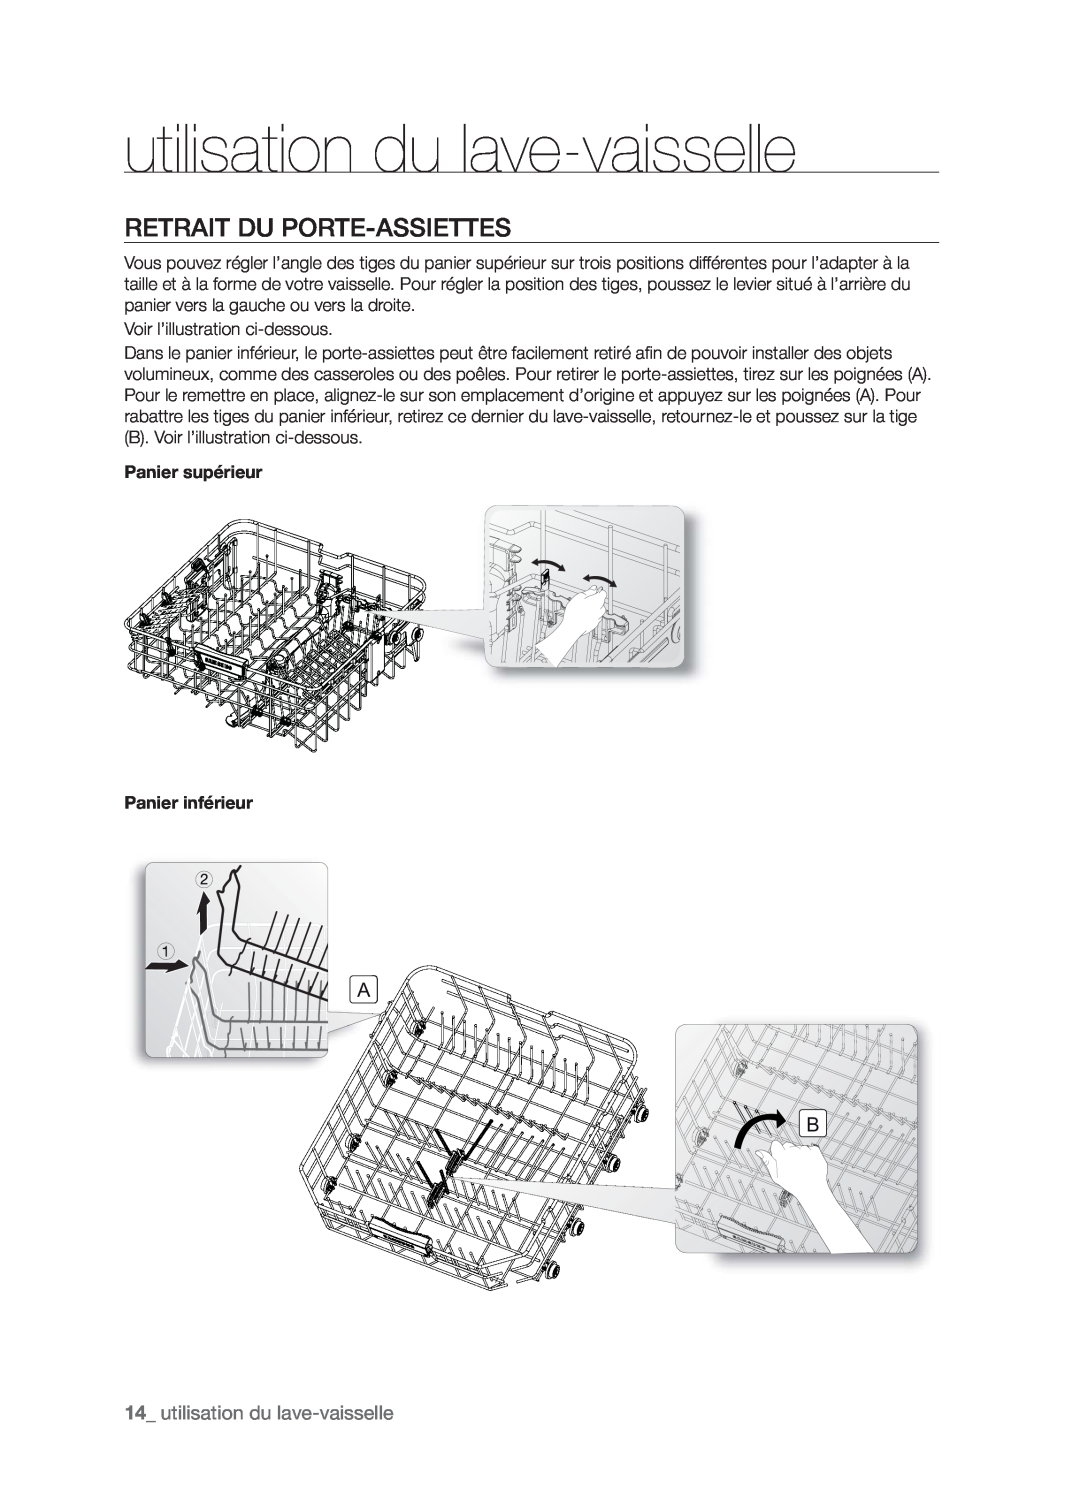 Samsung DMT800RHW, DMT800DD6800050A, DMT800RHB user manual Retrait Du Porte-Assiettes, 14_ utilisation du lave-vaisselle 